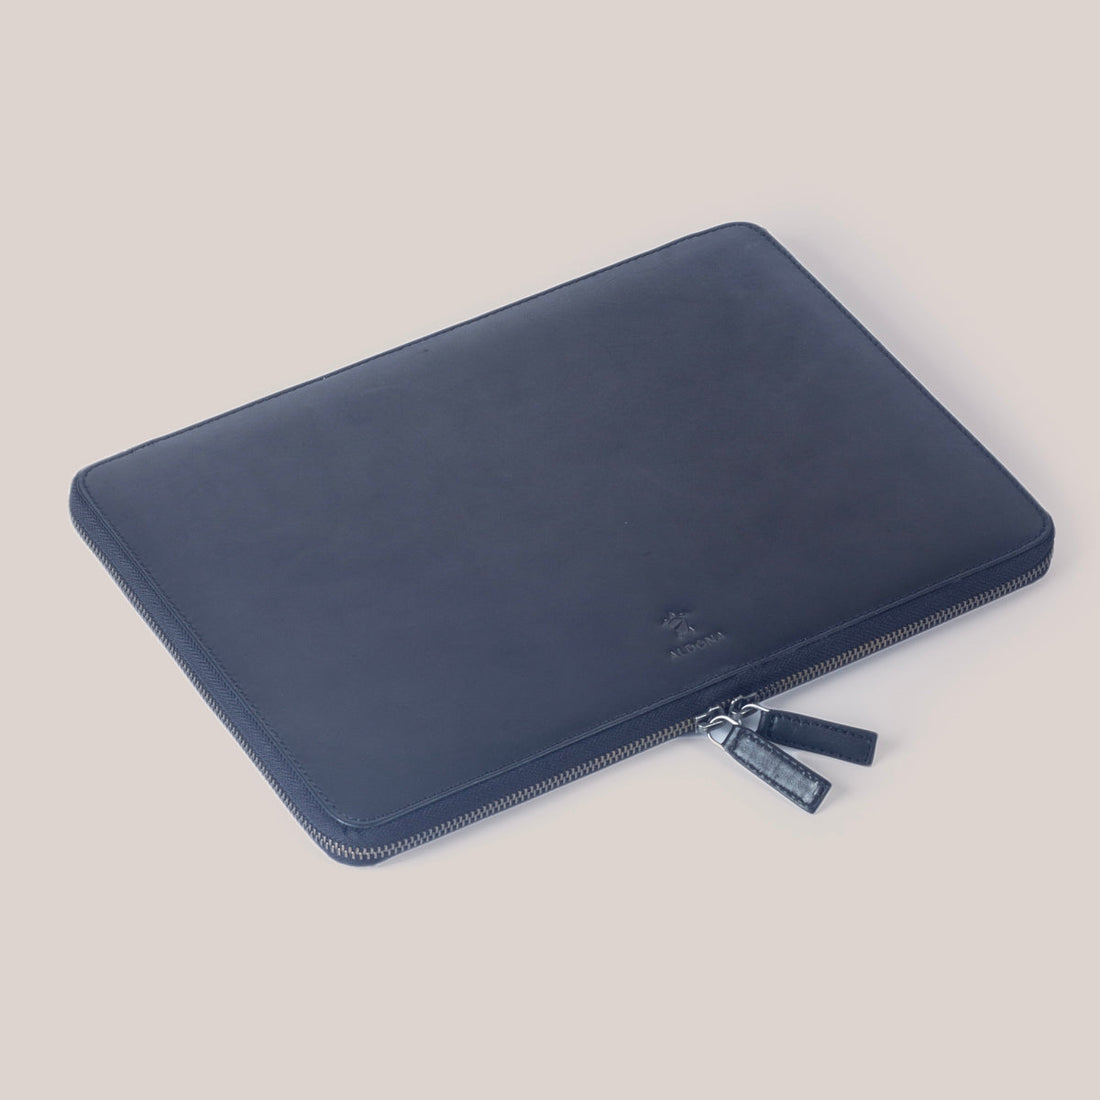 DELL XPS 15 Zippered Laptop Case - Cognac